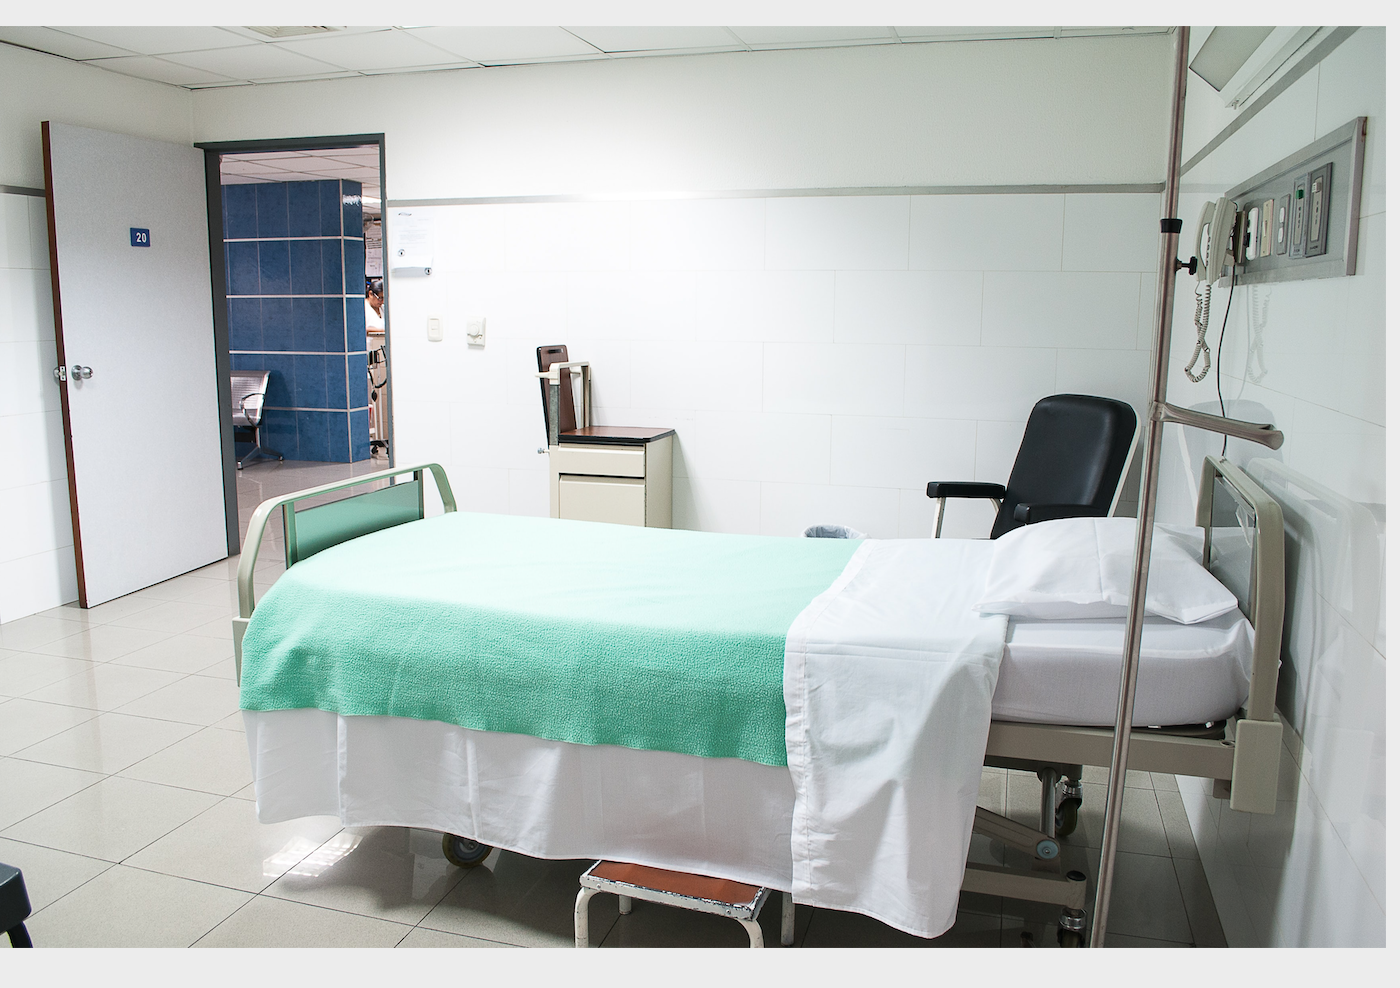 Применение всеобщего медицинского страхования в Южной Африке во время пандемии